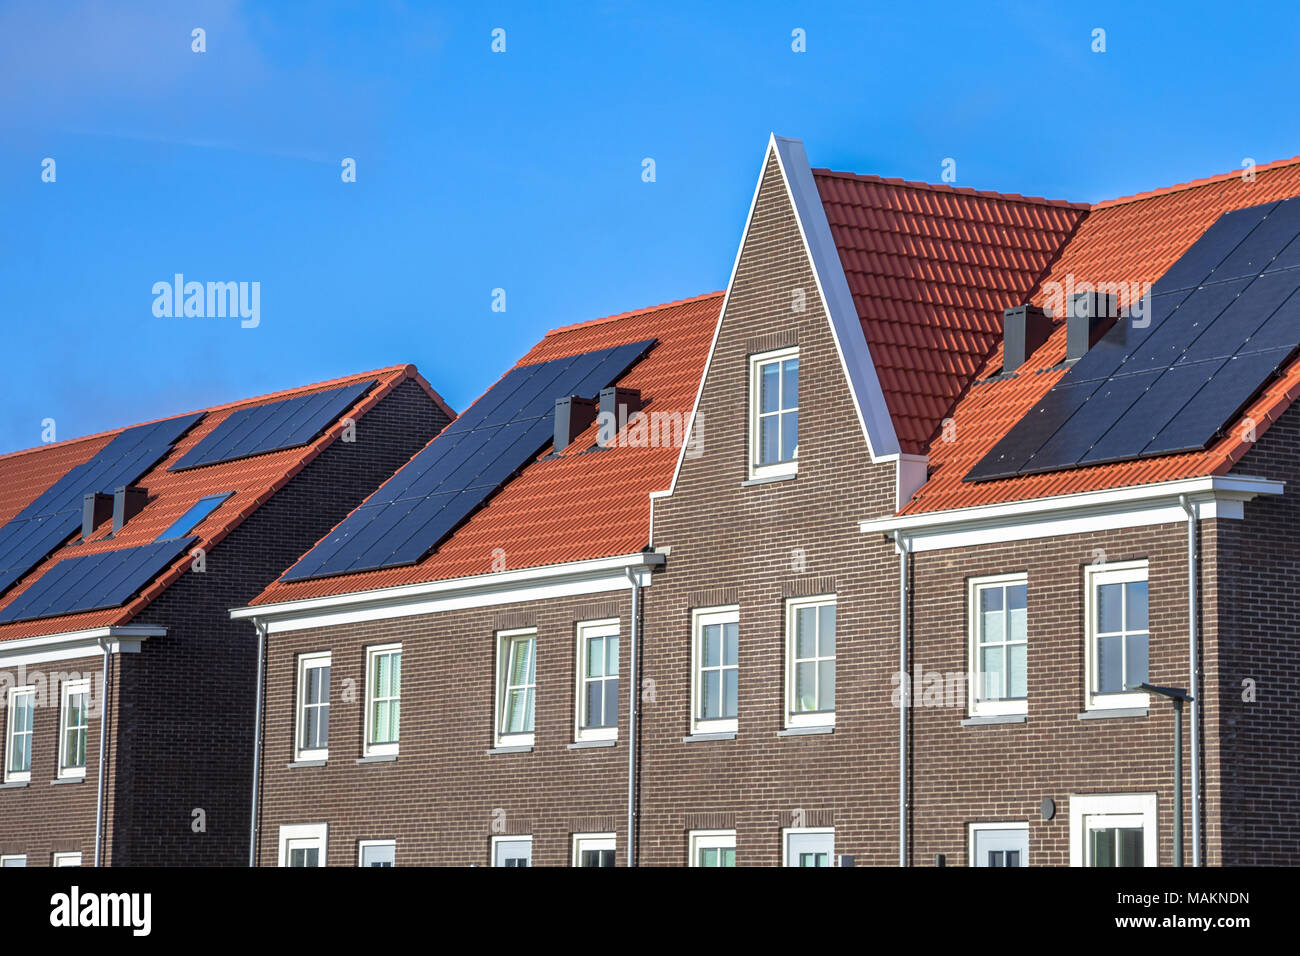 Chiudere da moderne ville a schiera con pannelli solari, marrone di mattoni e tegole rosse in stile neoclassico in Groningen Paesi Bassi Foto Stock